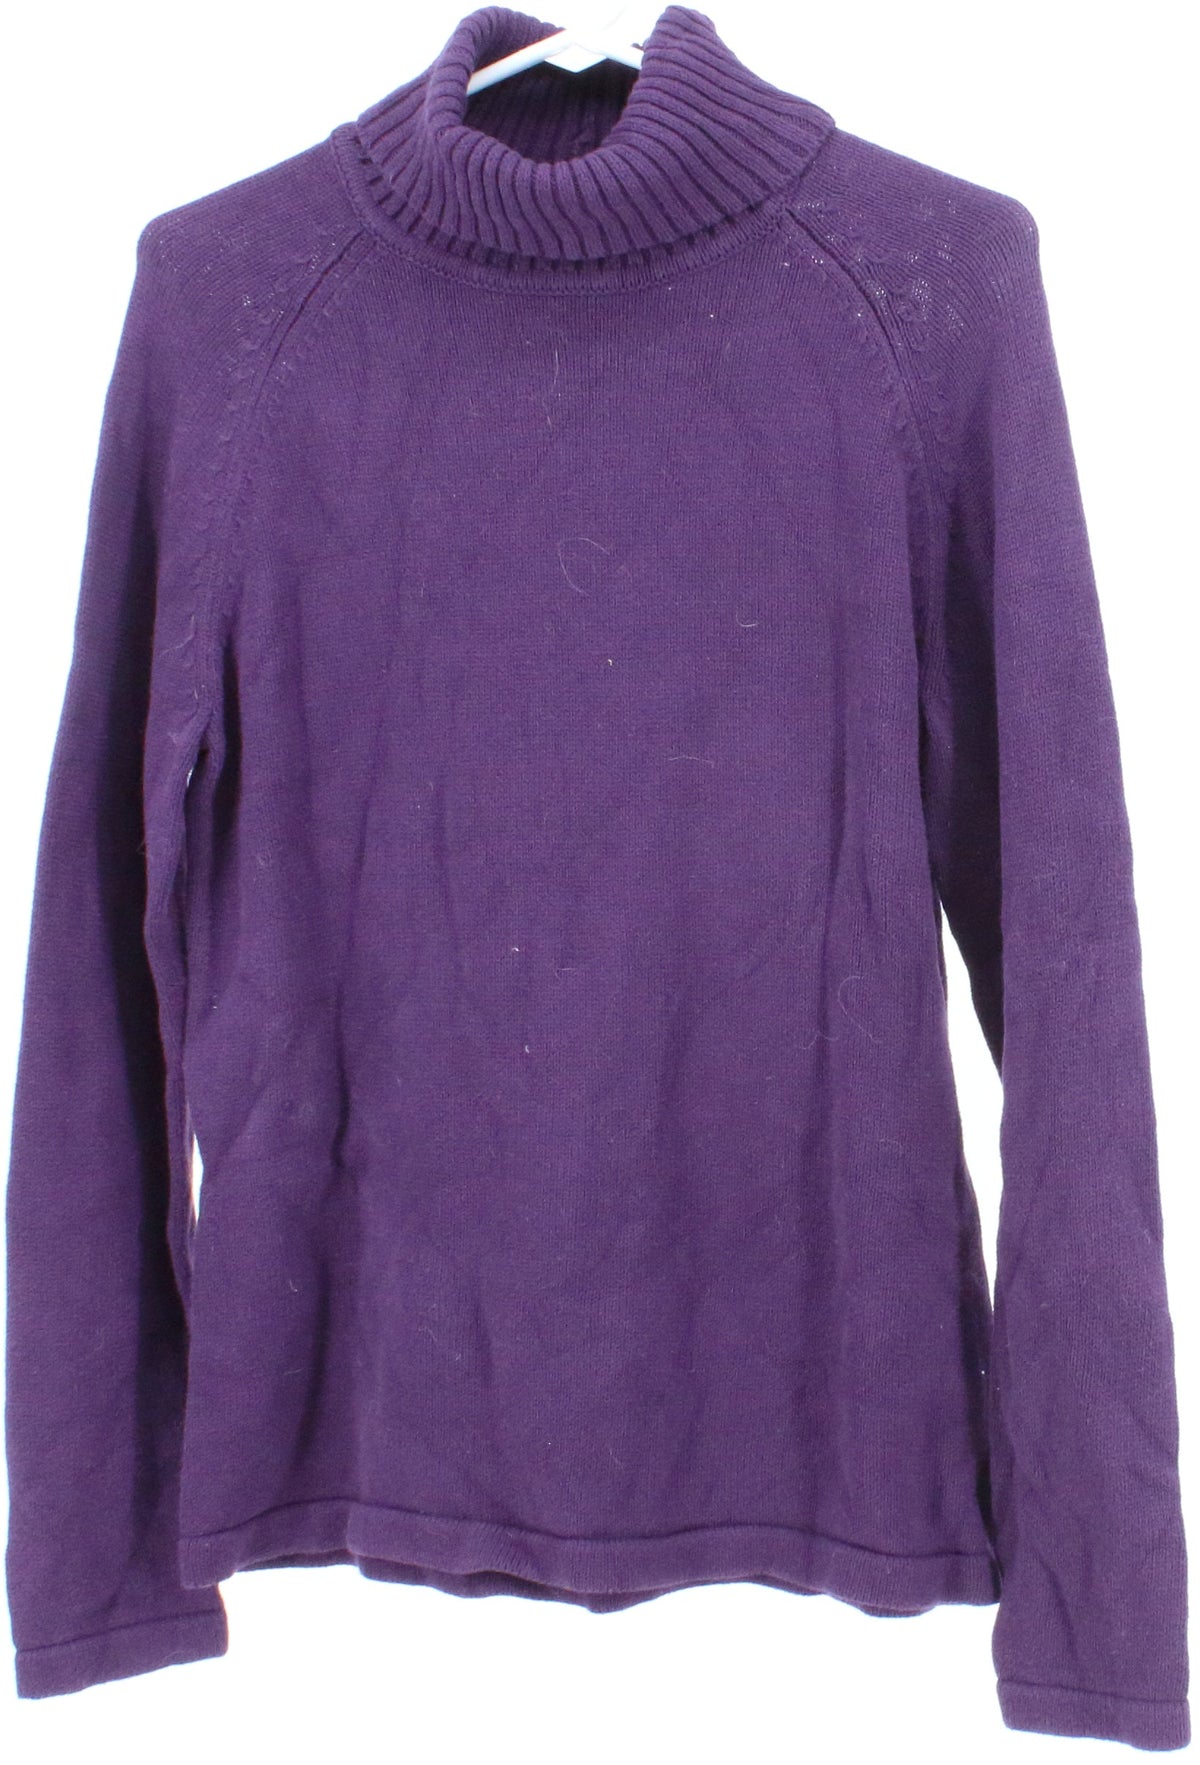 Pria Purple Turtleneck Sweater